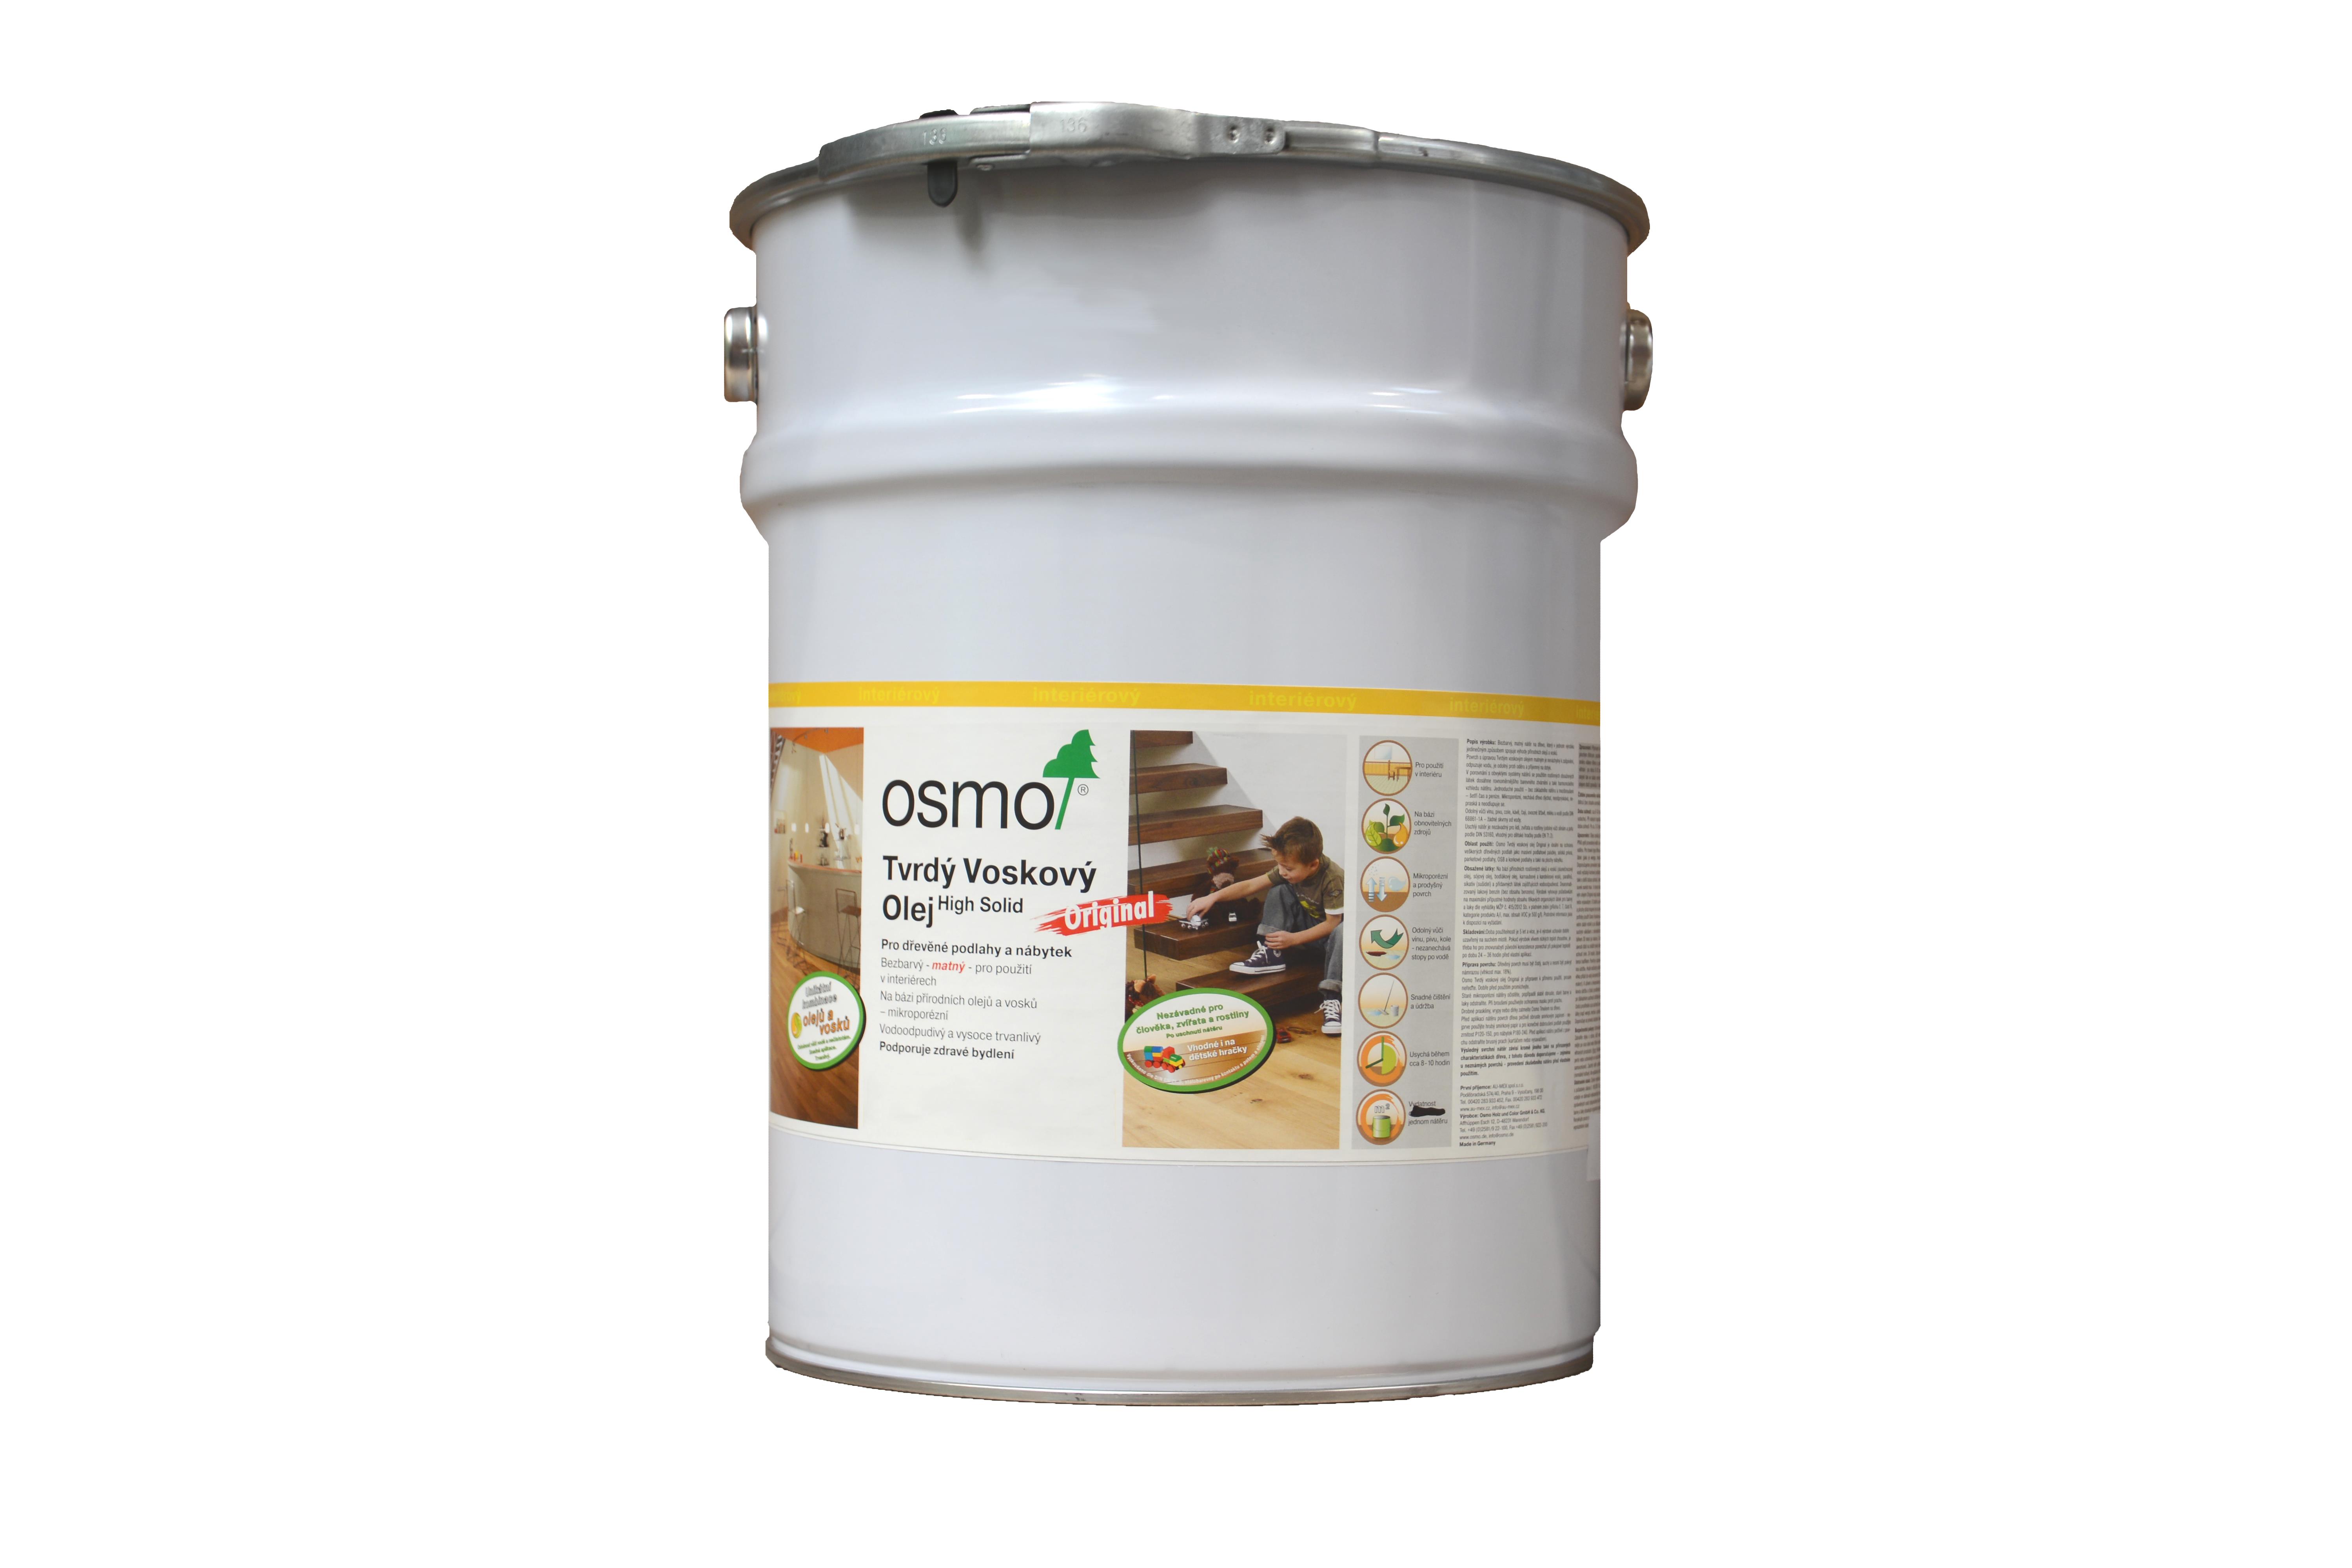 OSMO Tvrdý voskový olej Original 3065 - na podlahy 10l bezbarvý polomat